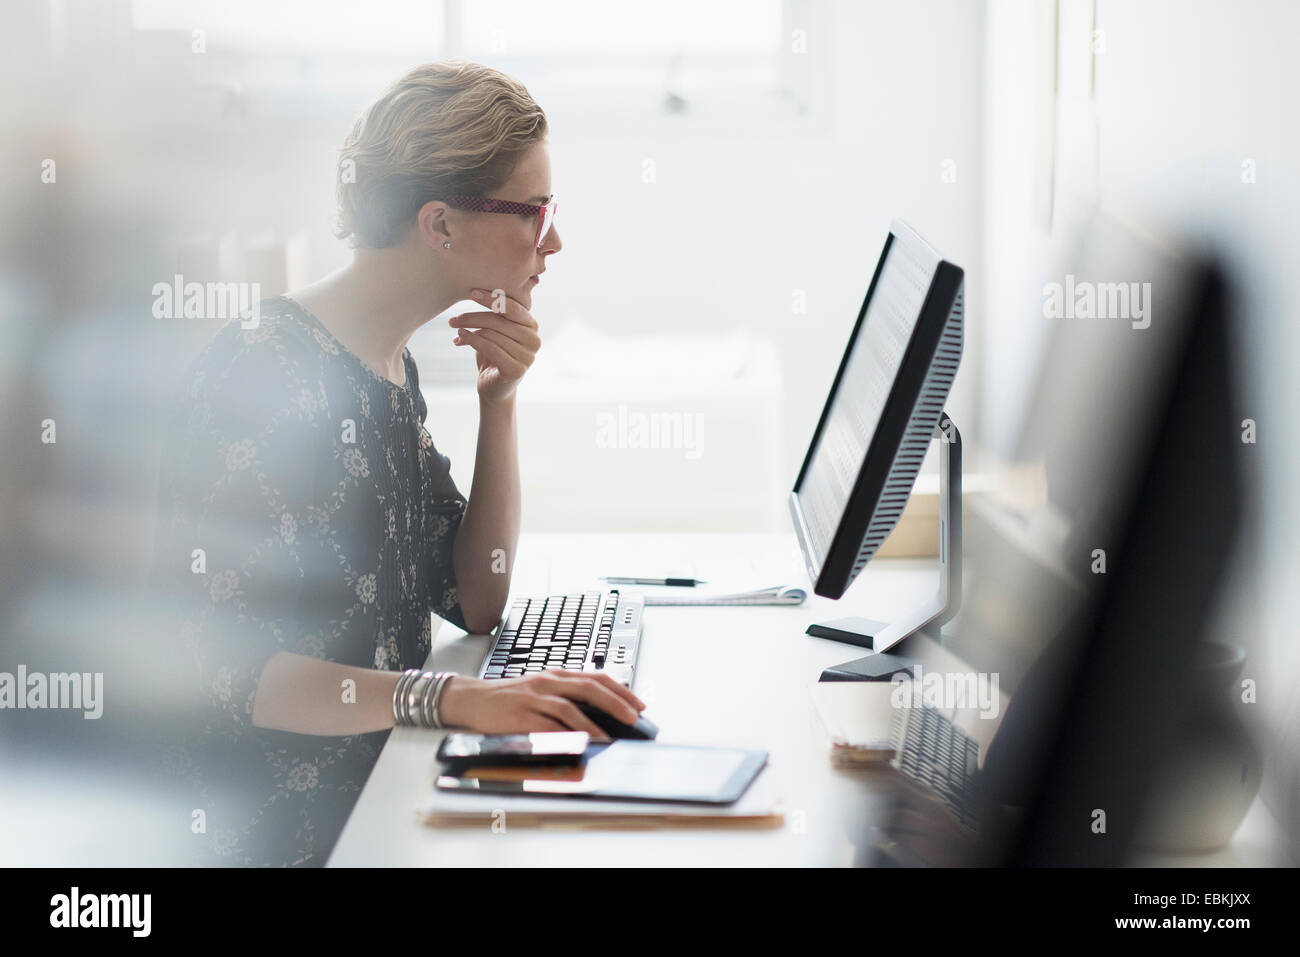 Vue de côté business woman working on desktop pc in office Banque D'Images